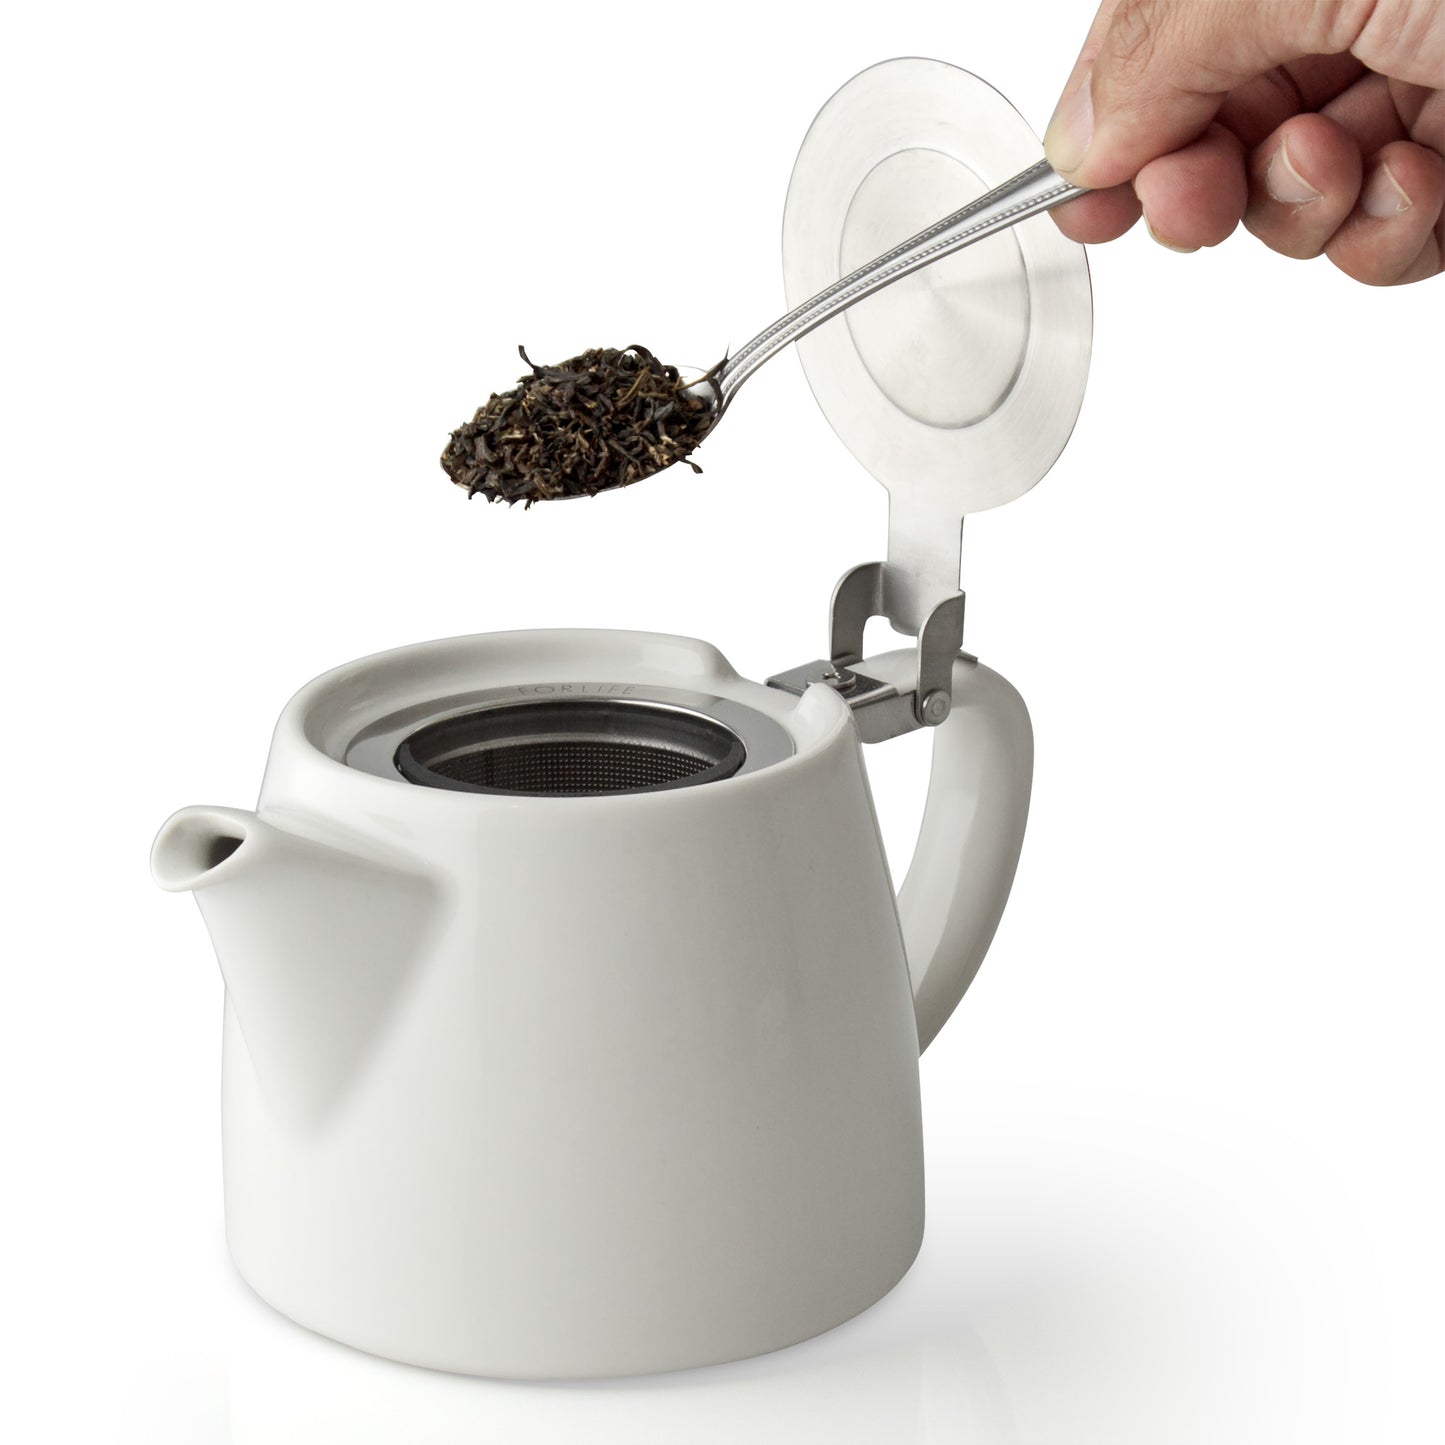 FORLIFE Stump Teapot (.5L/18oz) - 10colours